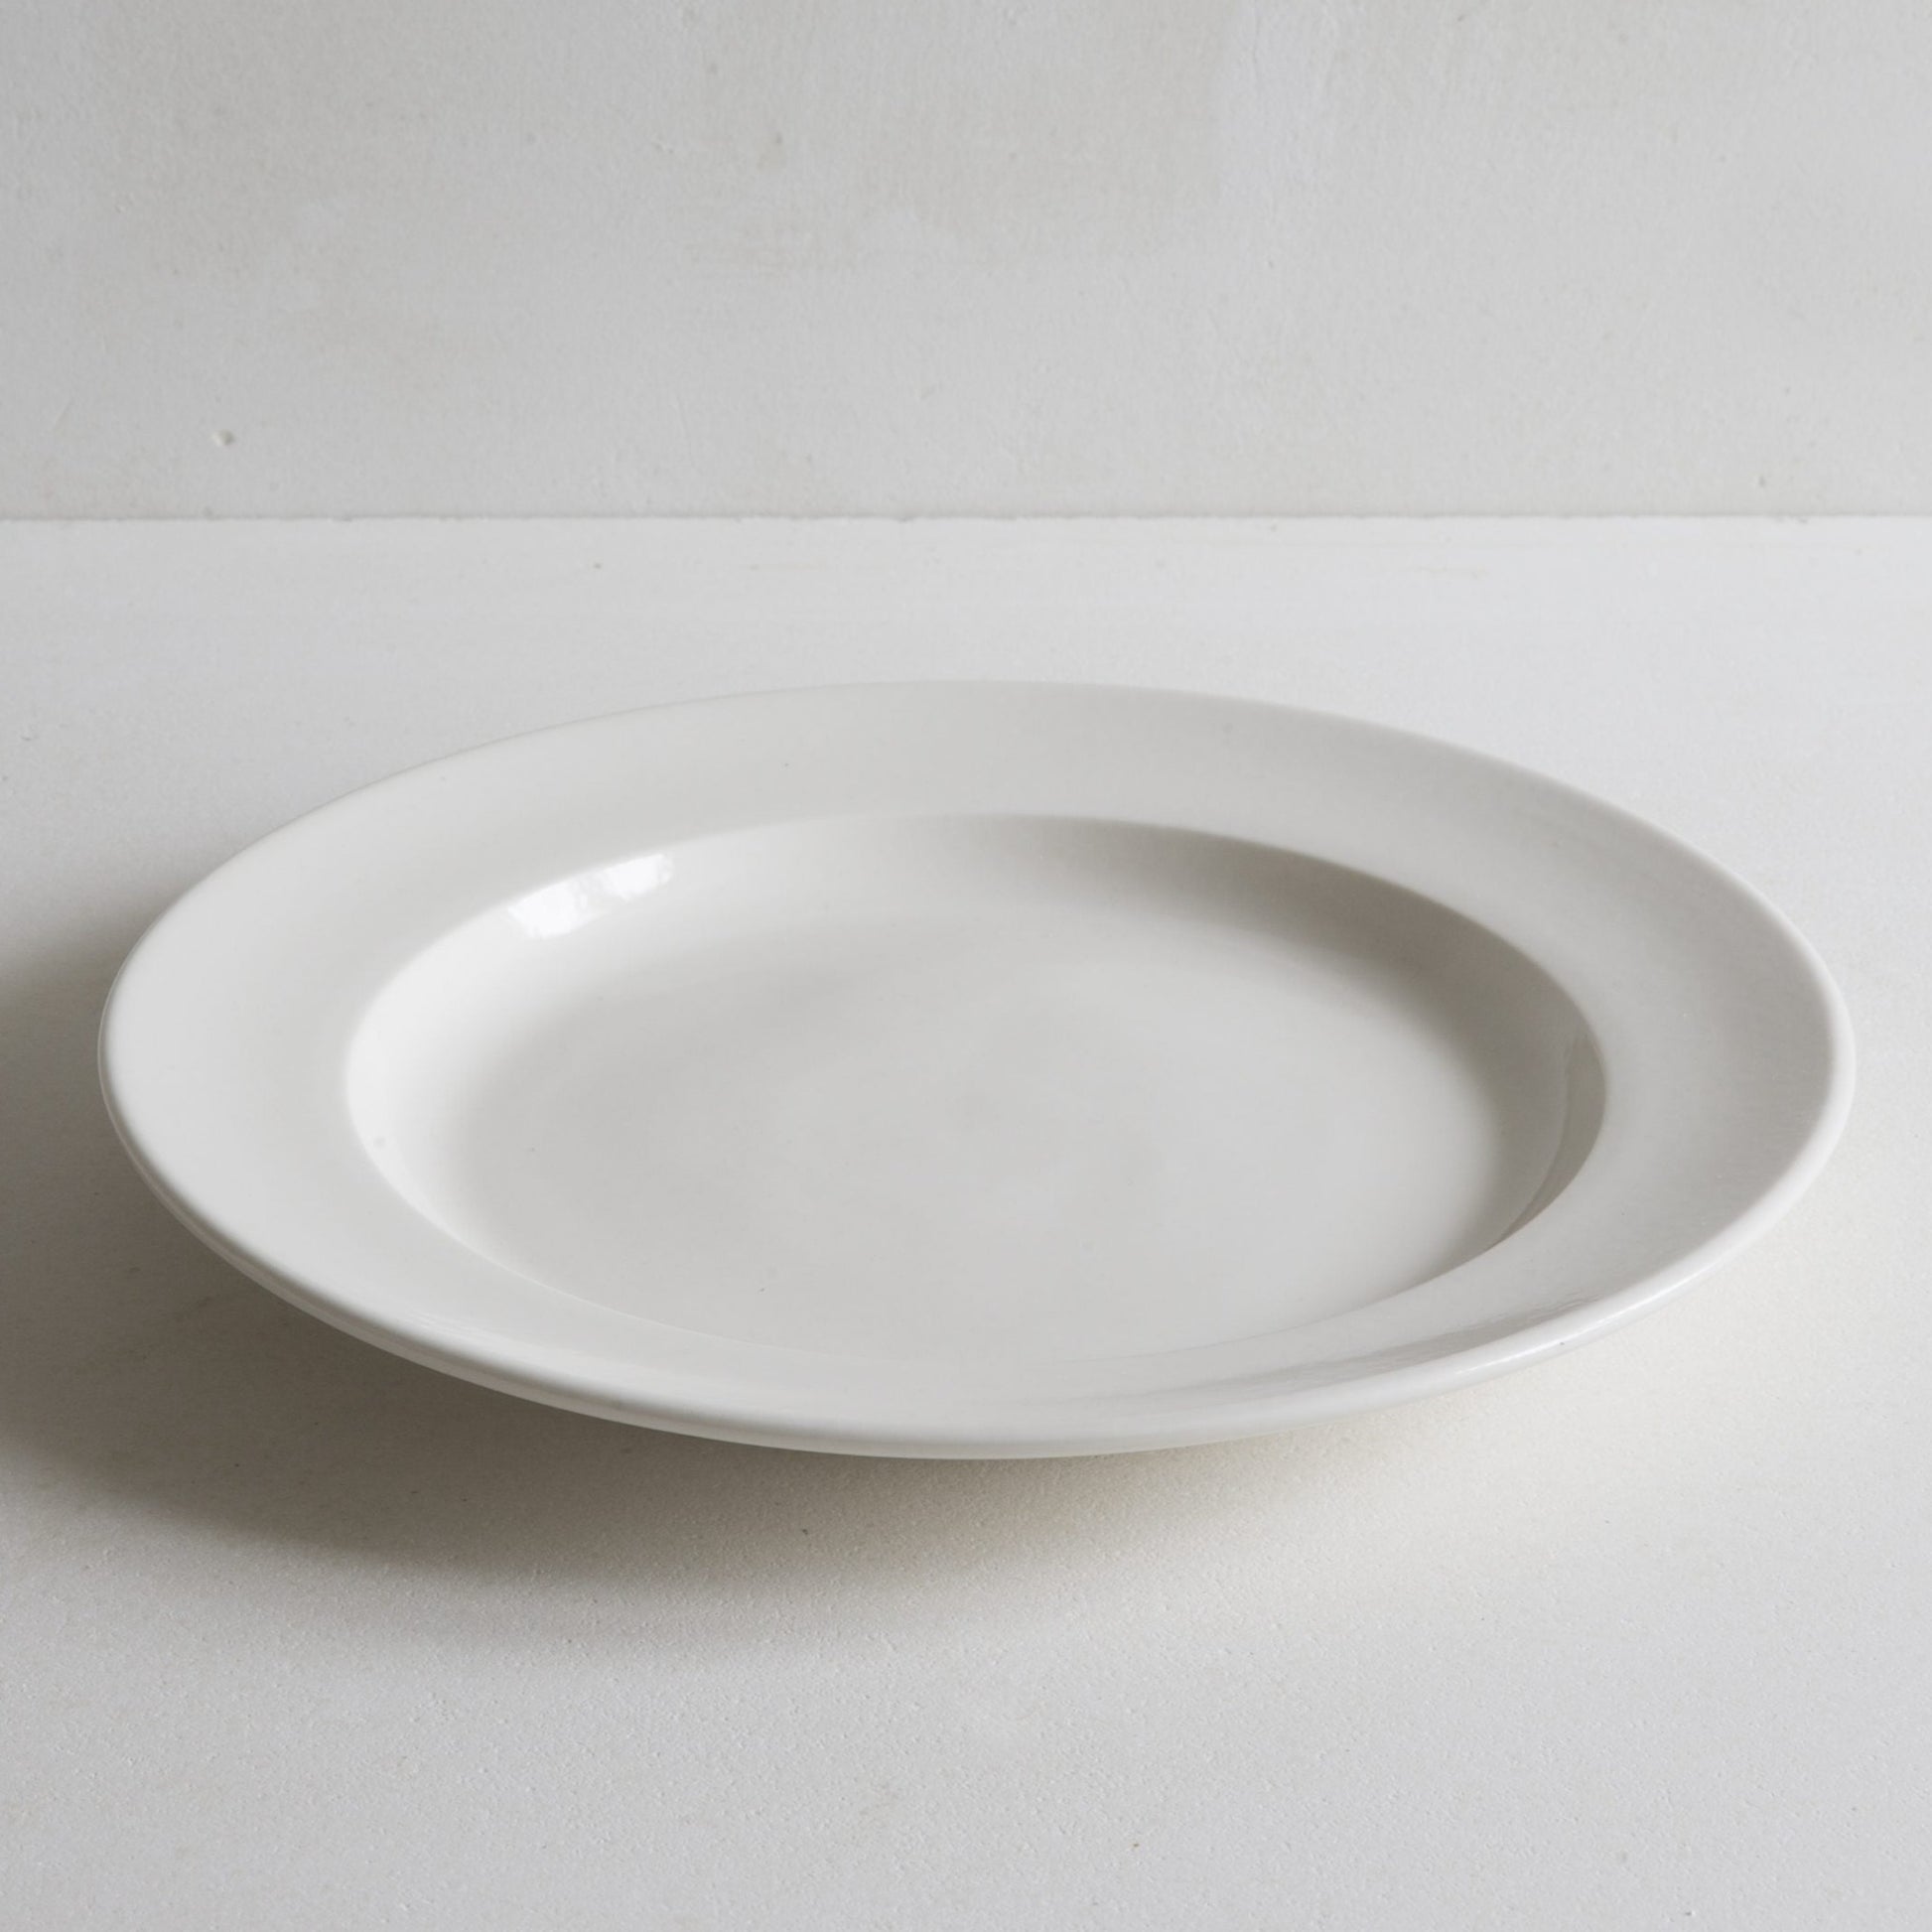 Porcelain Dinner Plate | Luxury Pottery Dinnerware Handmade in UK